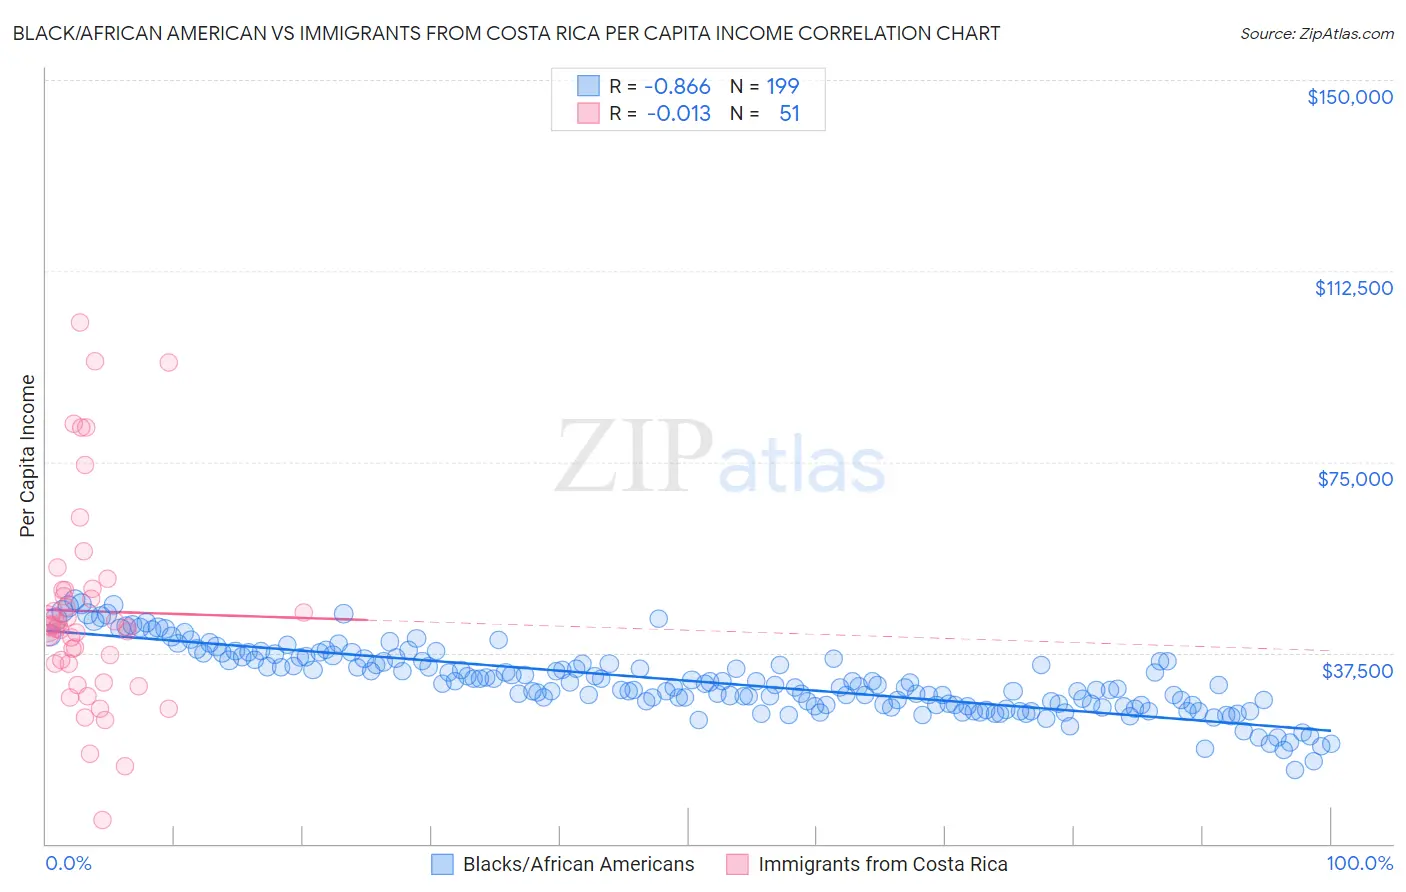 Black/African American vs Immigrants from Costa Rica Per Capita Income